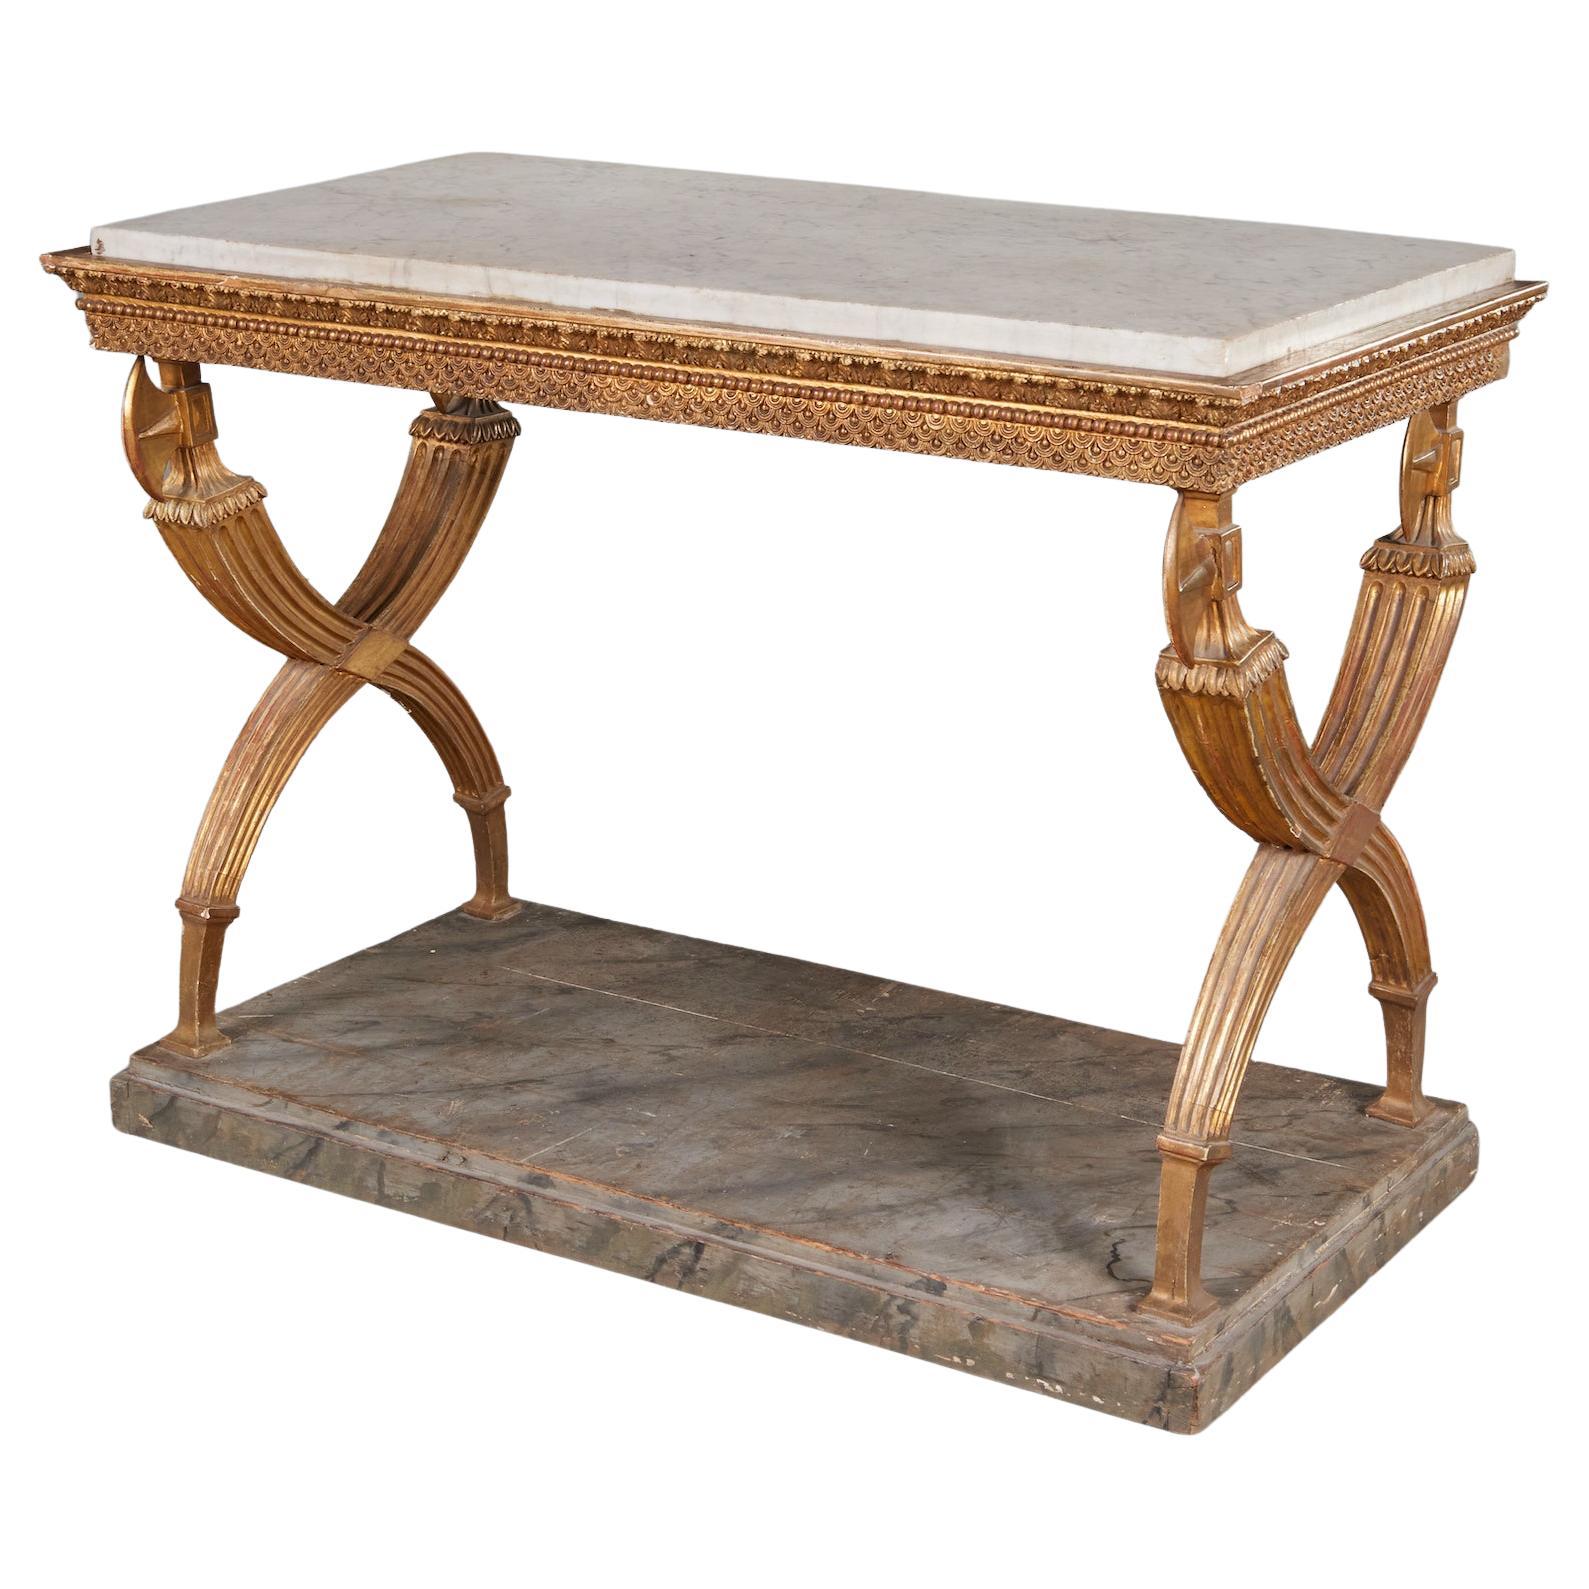 Table console noclassique sudoise lgante en bois dor avec plateau en marbre